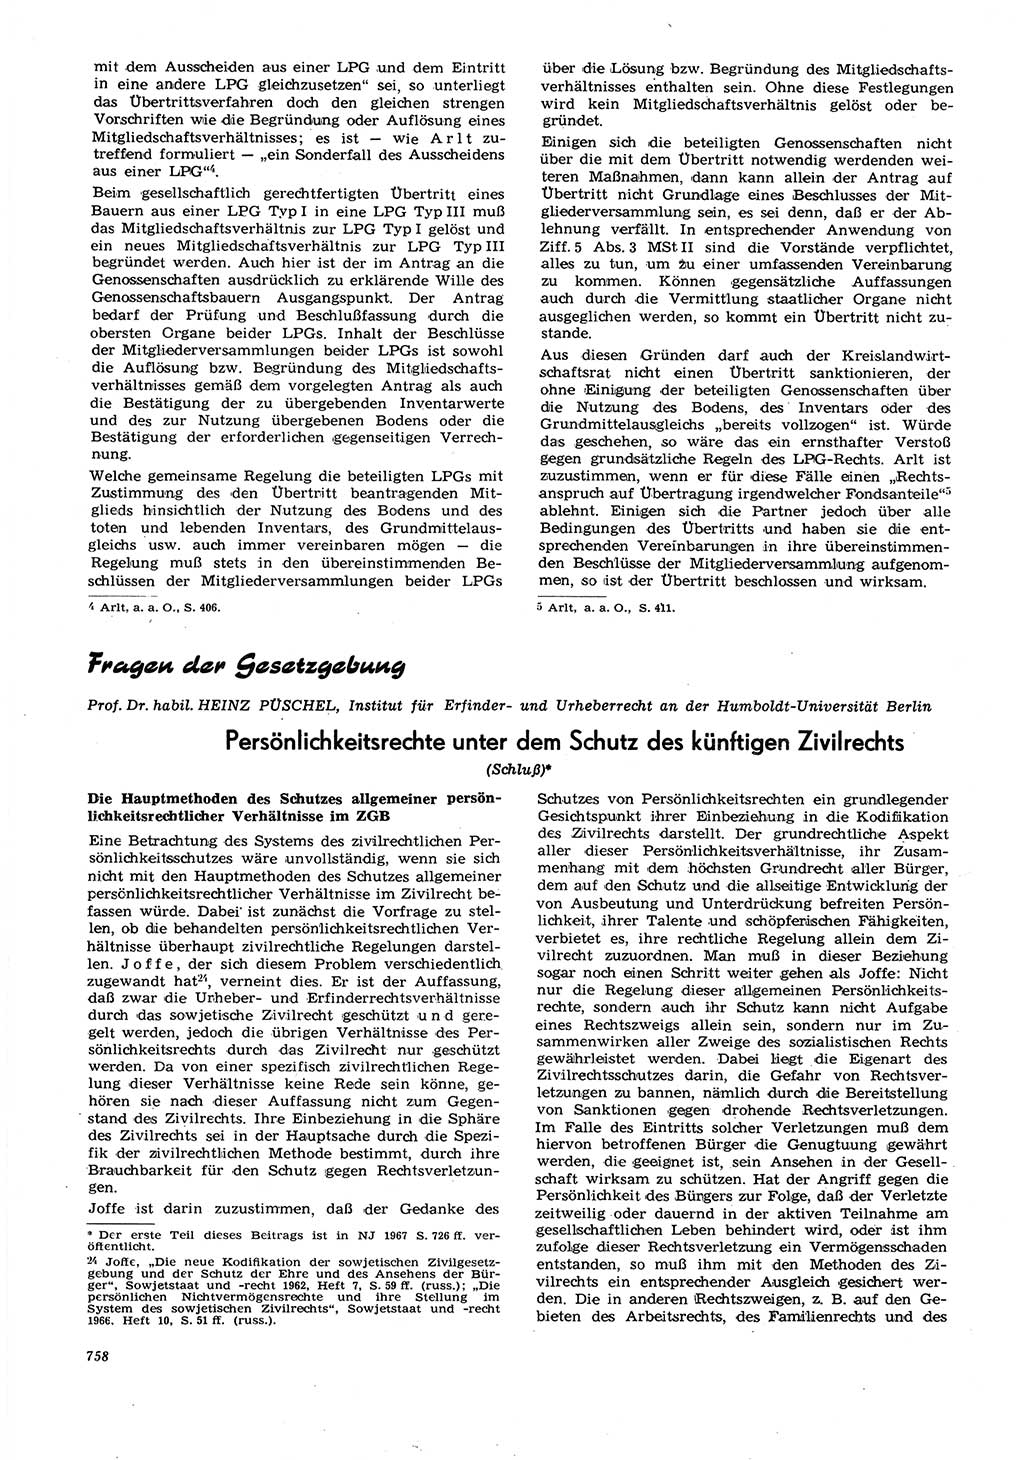 Neue Justiz (NJ), Zeitschrift für Recht und Rechtswissenschaft [Deutsche Demokratische Republik (DDR)], 21. Jahrgang 1967, Seite 758 (NJ DDR 1967, S. 758)